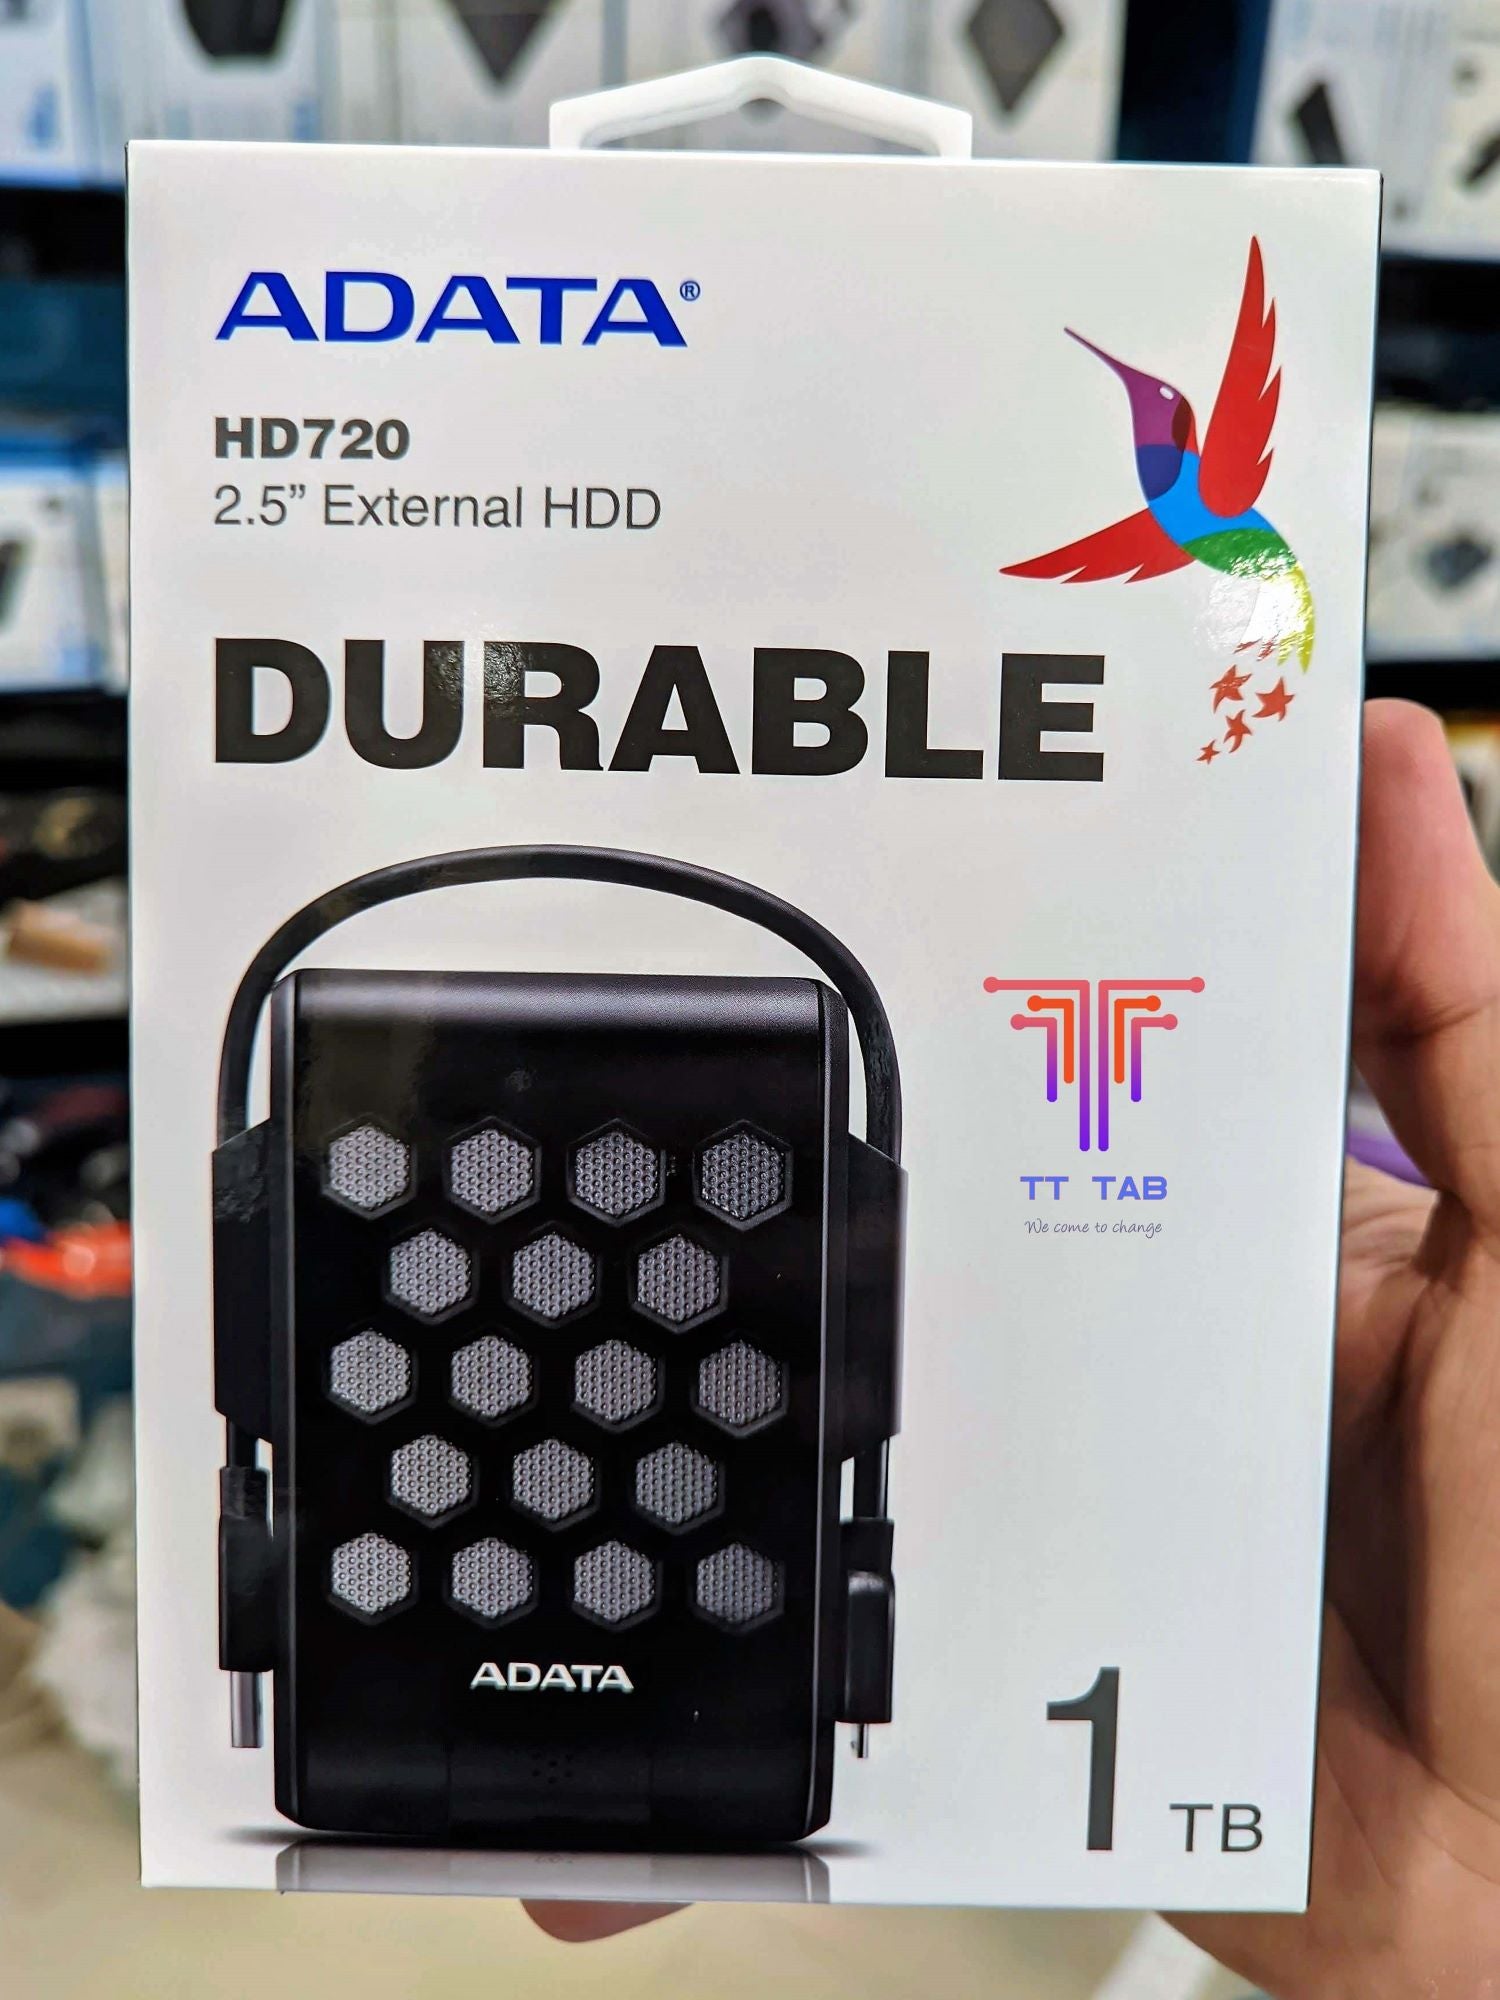 ADATA HD720 External HDD